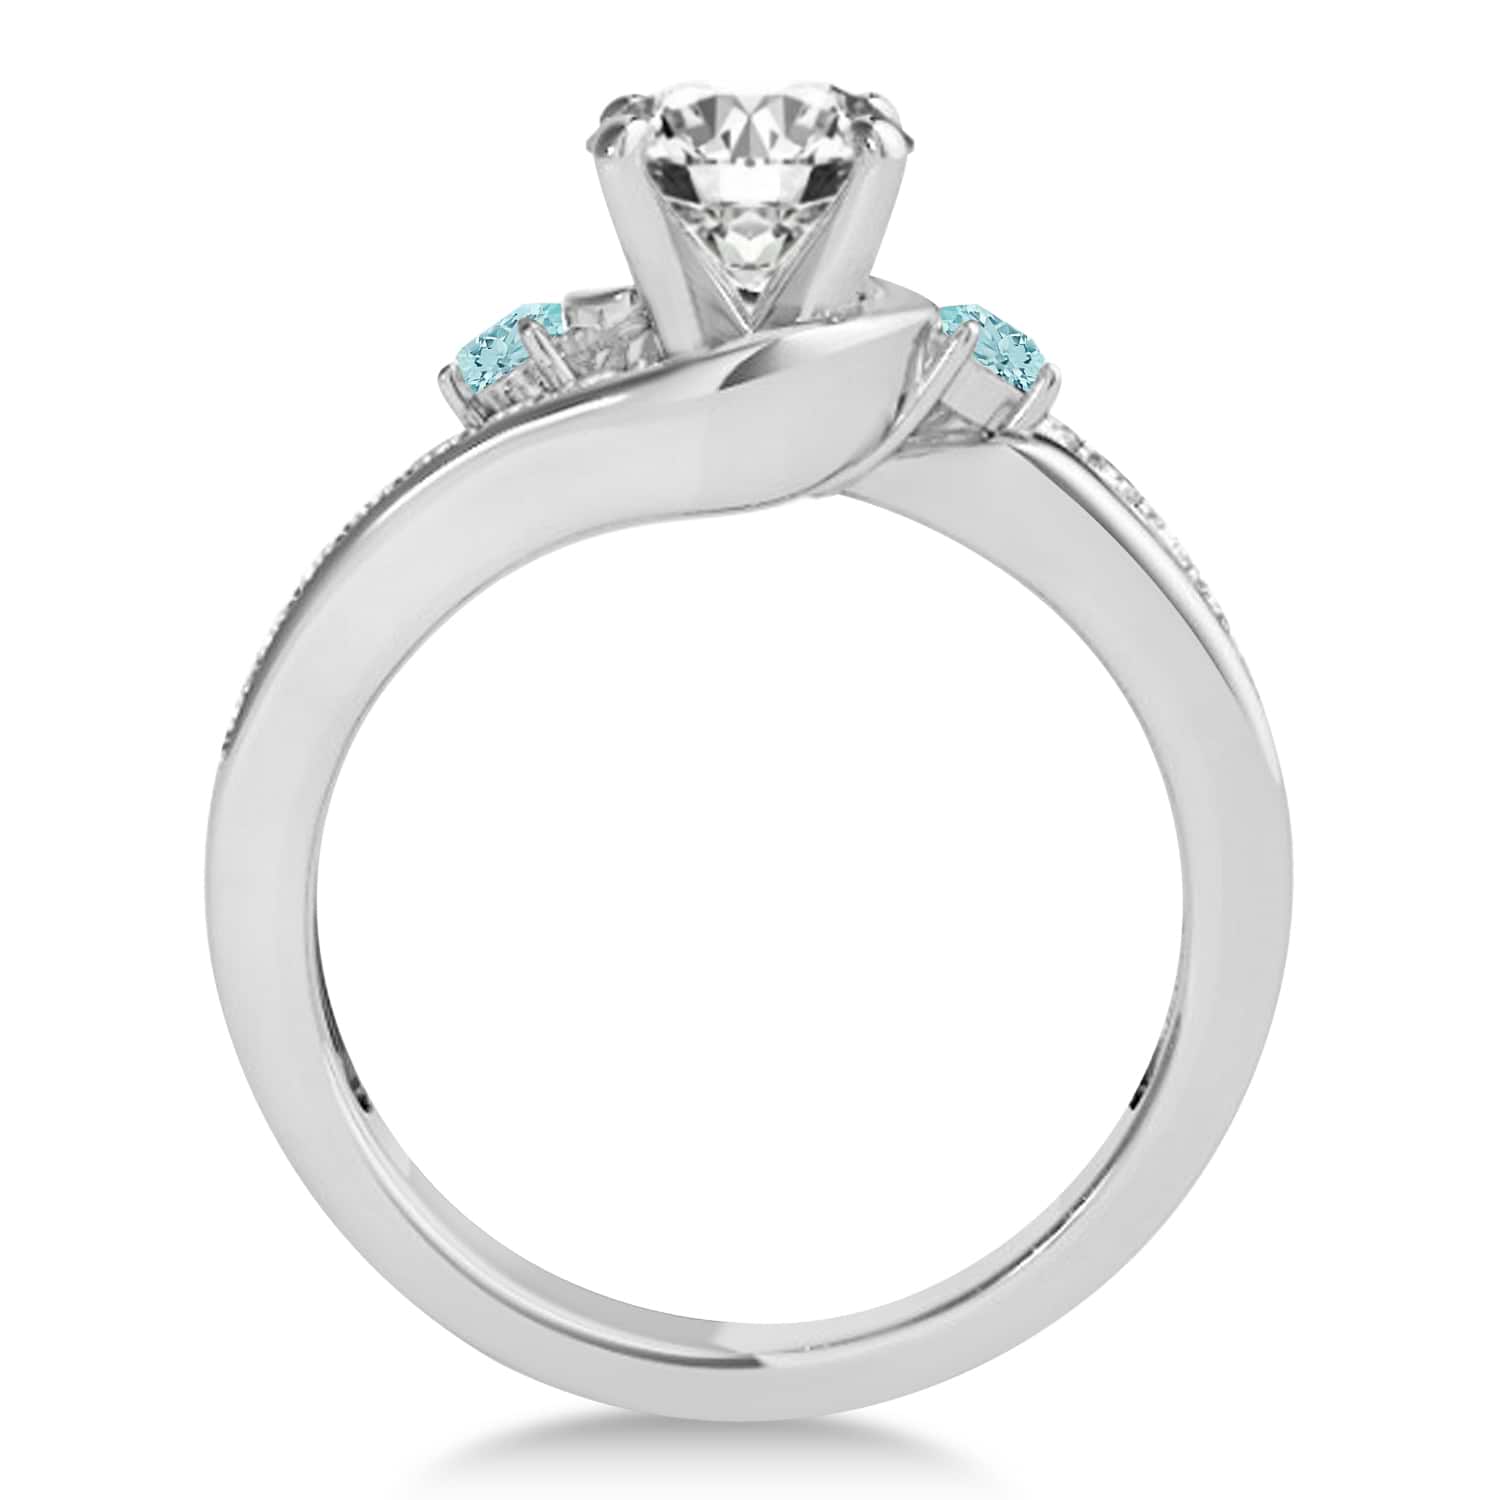 Swirl Design Aquamarine & Diamond Engagement Ring Setting 18k White Gold 0.38ct